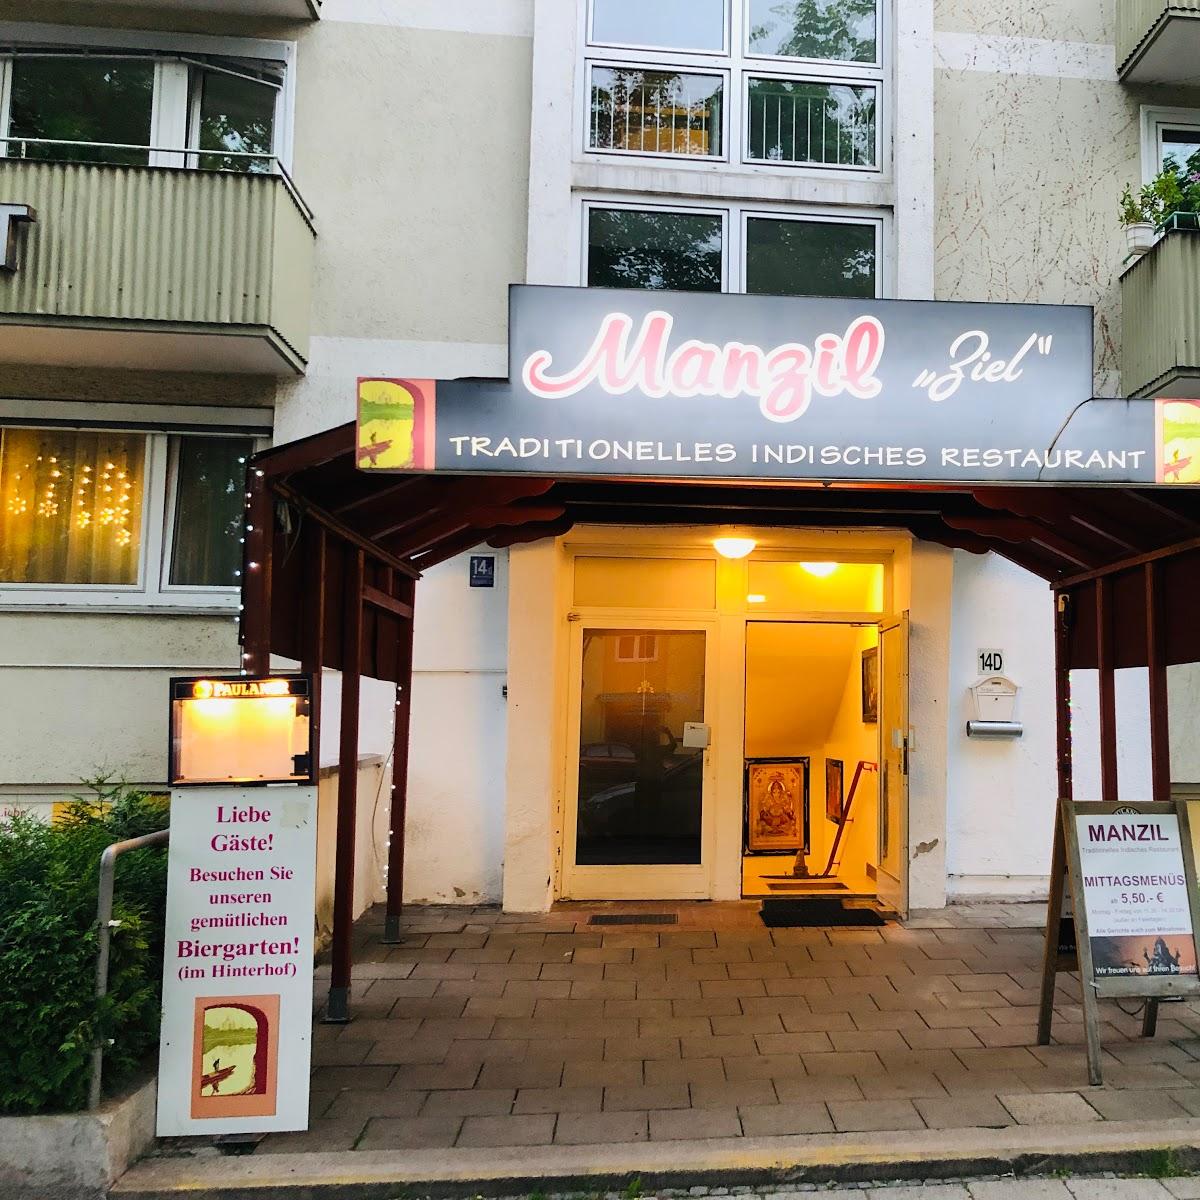 Restaurant "Manzil - Indisches Restaurant München" in München